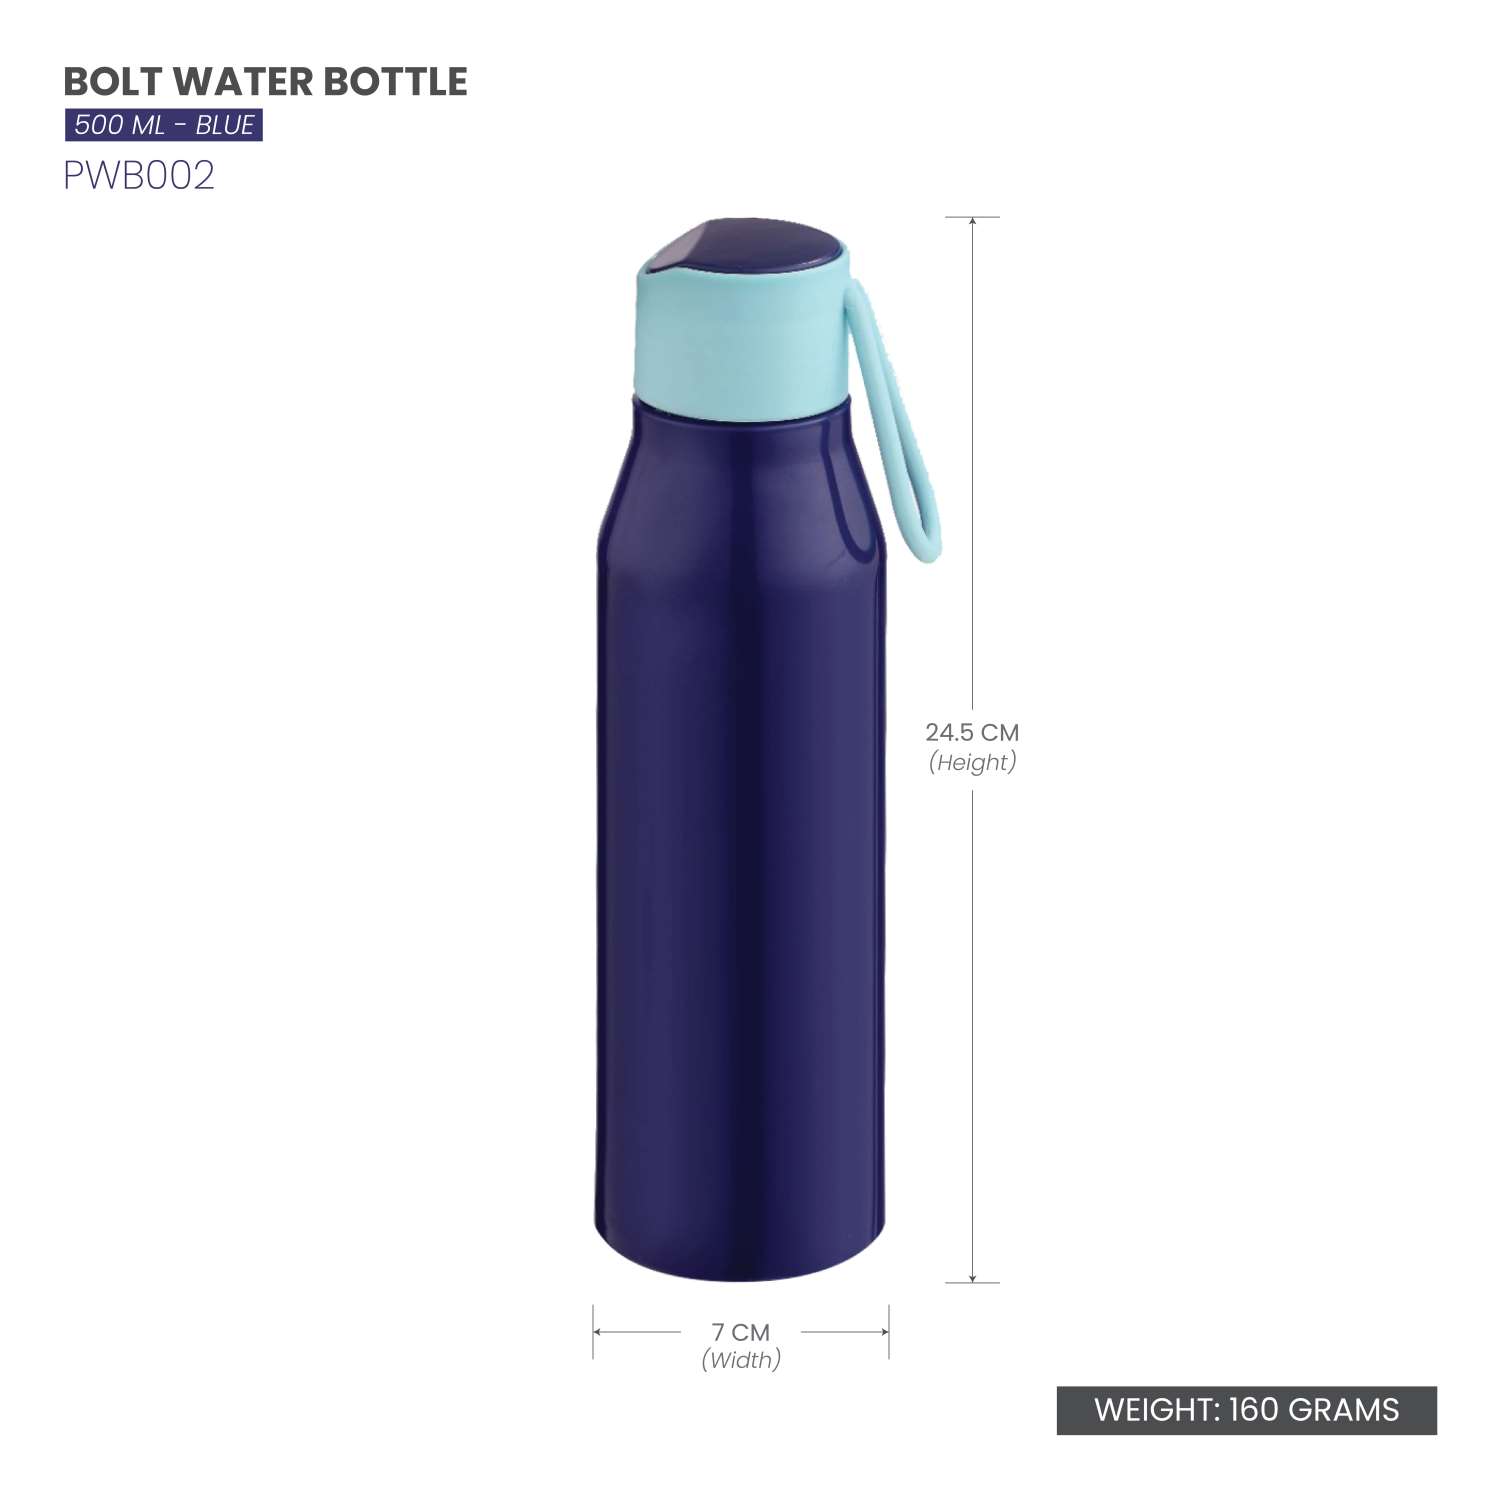 Selvel Bolt Plastic Water Bottle Blue 500Ml